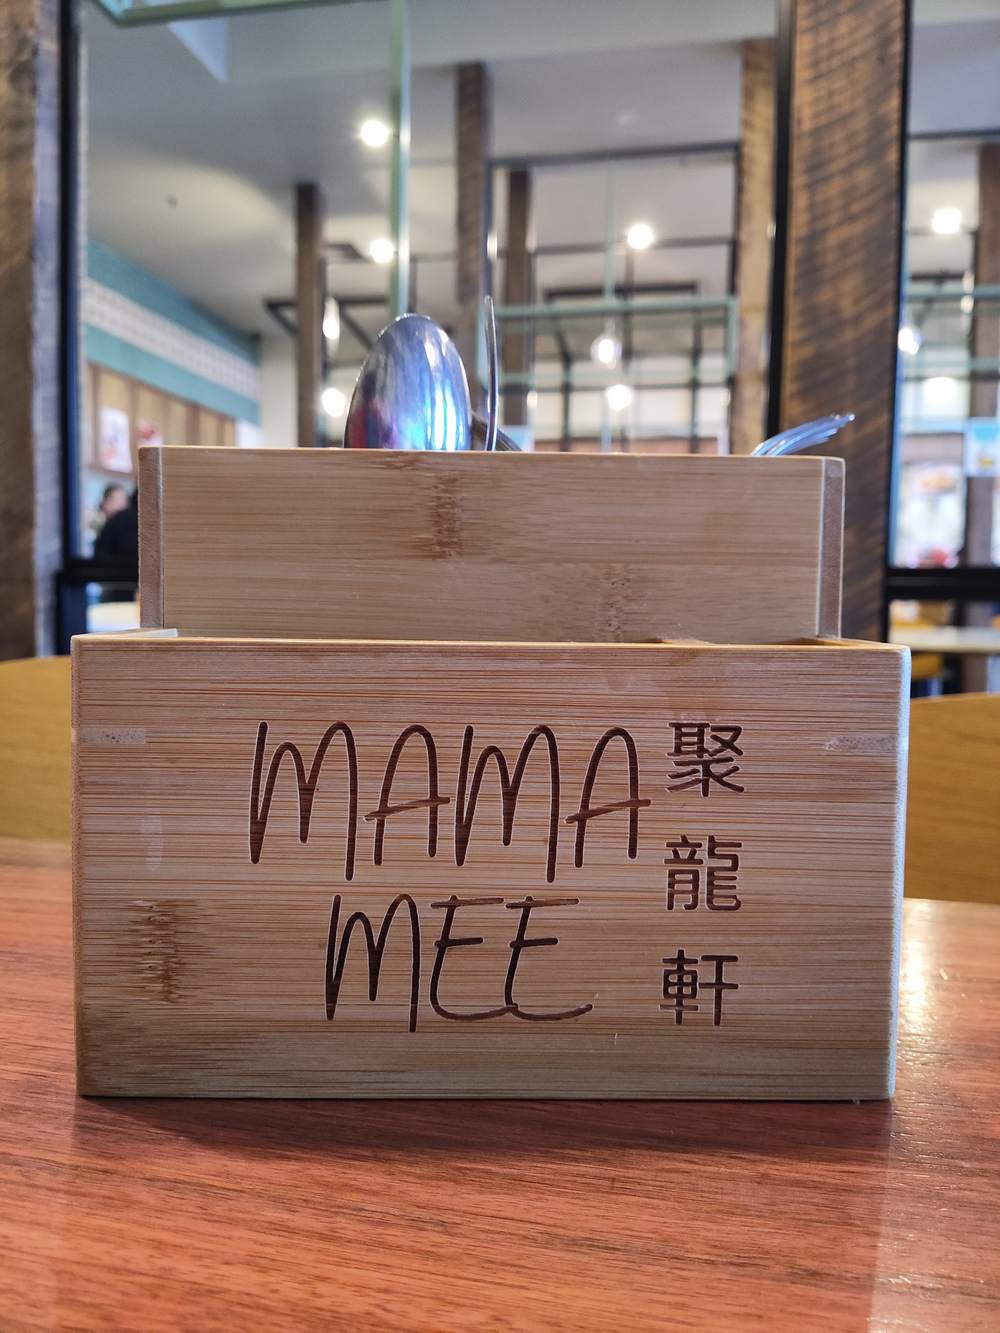 Mama Mee